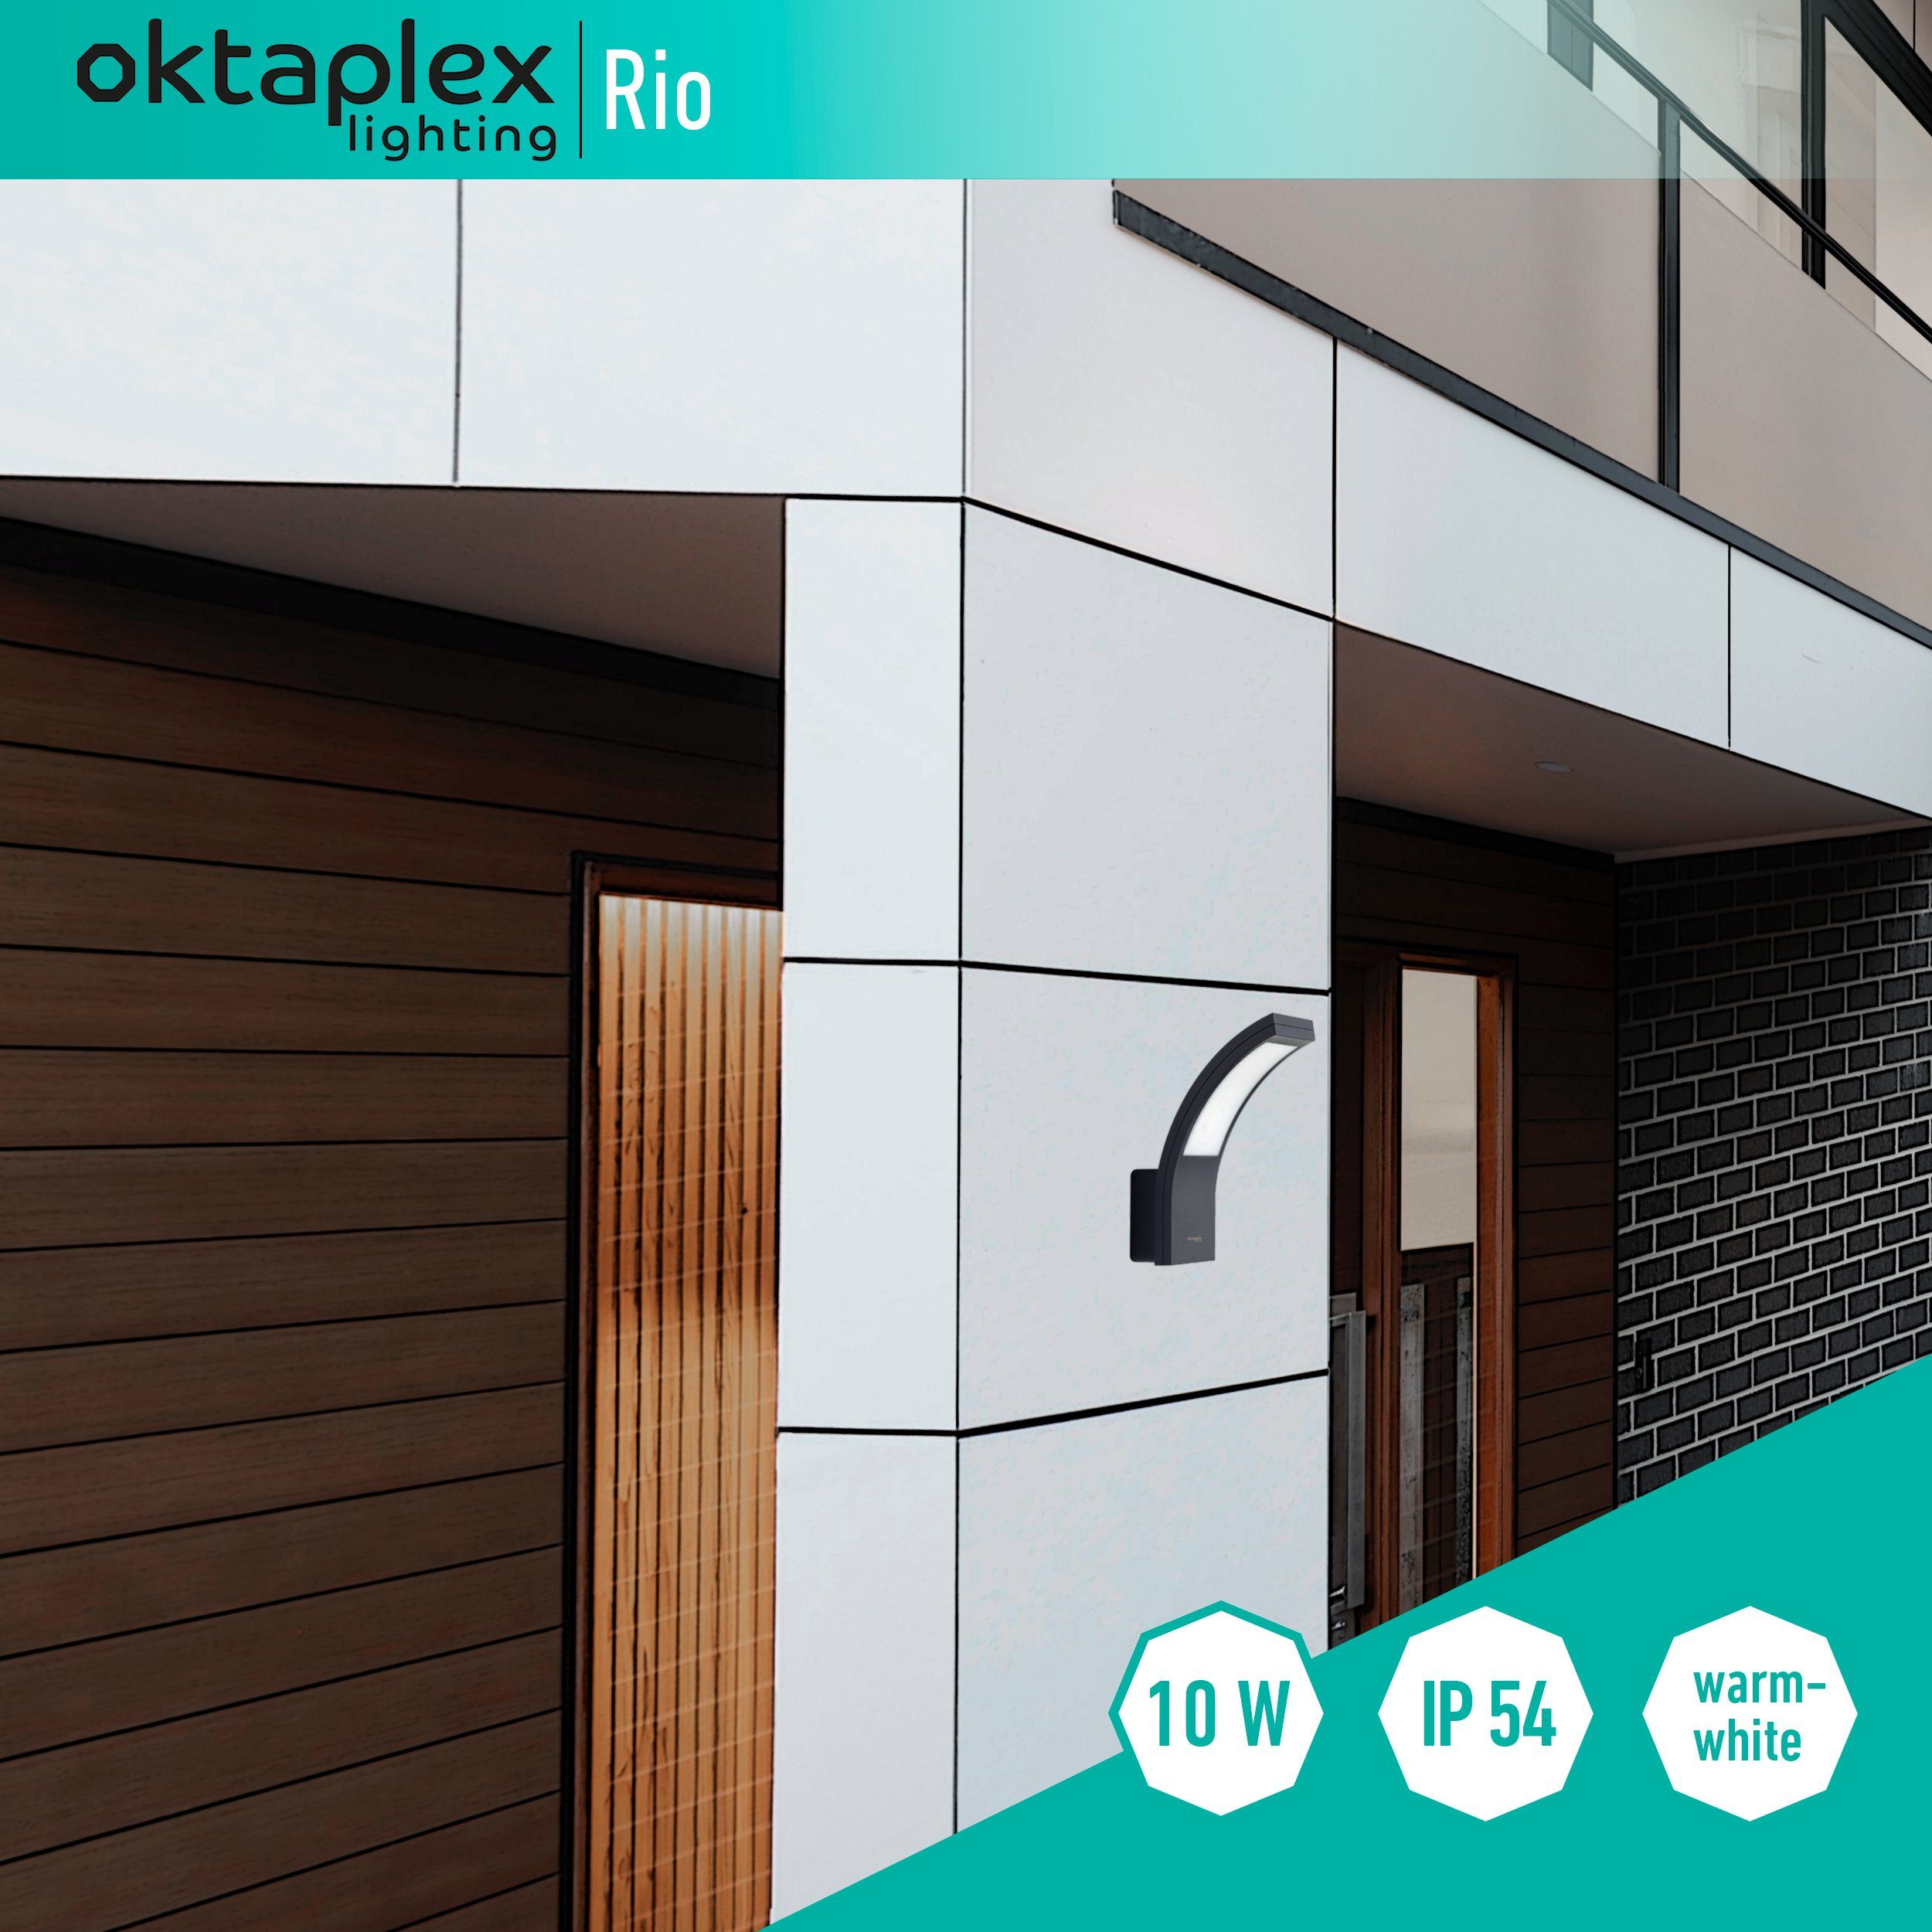 LED Rio 10W, Oktaplex Wandleuchte LED Außenbeleuchtung Warmweiß, 750lm Außen-Wandleuchte IP54 lighting anthrazit fest integriert, Diffusor, 3000K